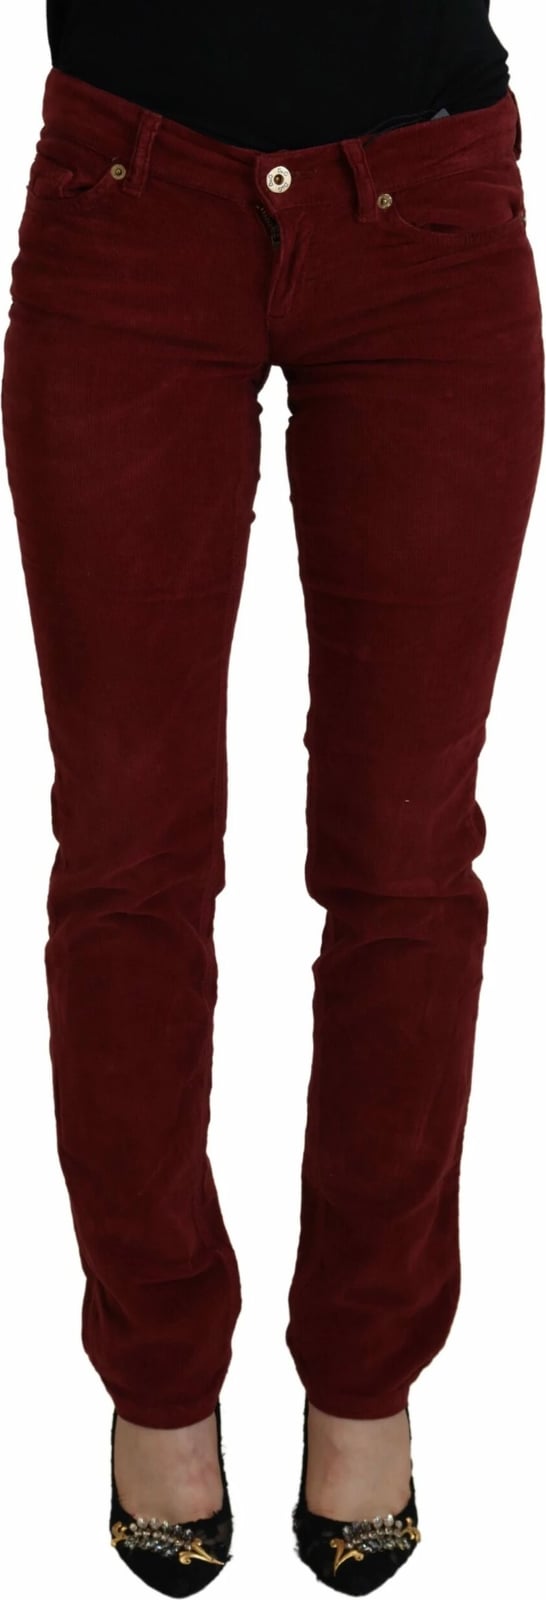 Pantallona për femra Dolce & Gabbana, të kuqe 